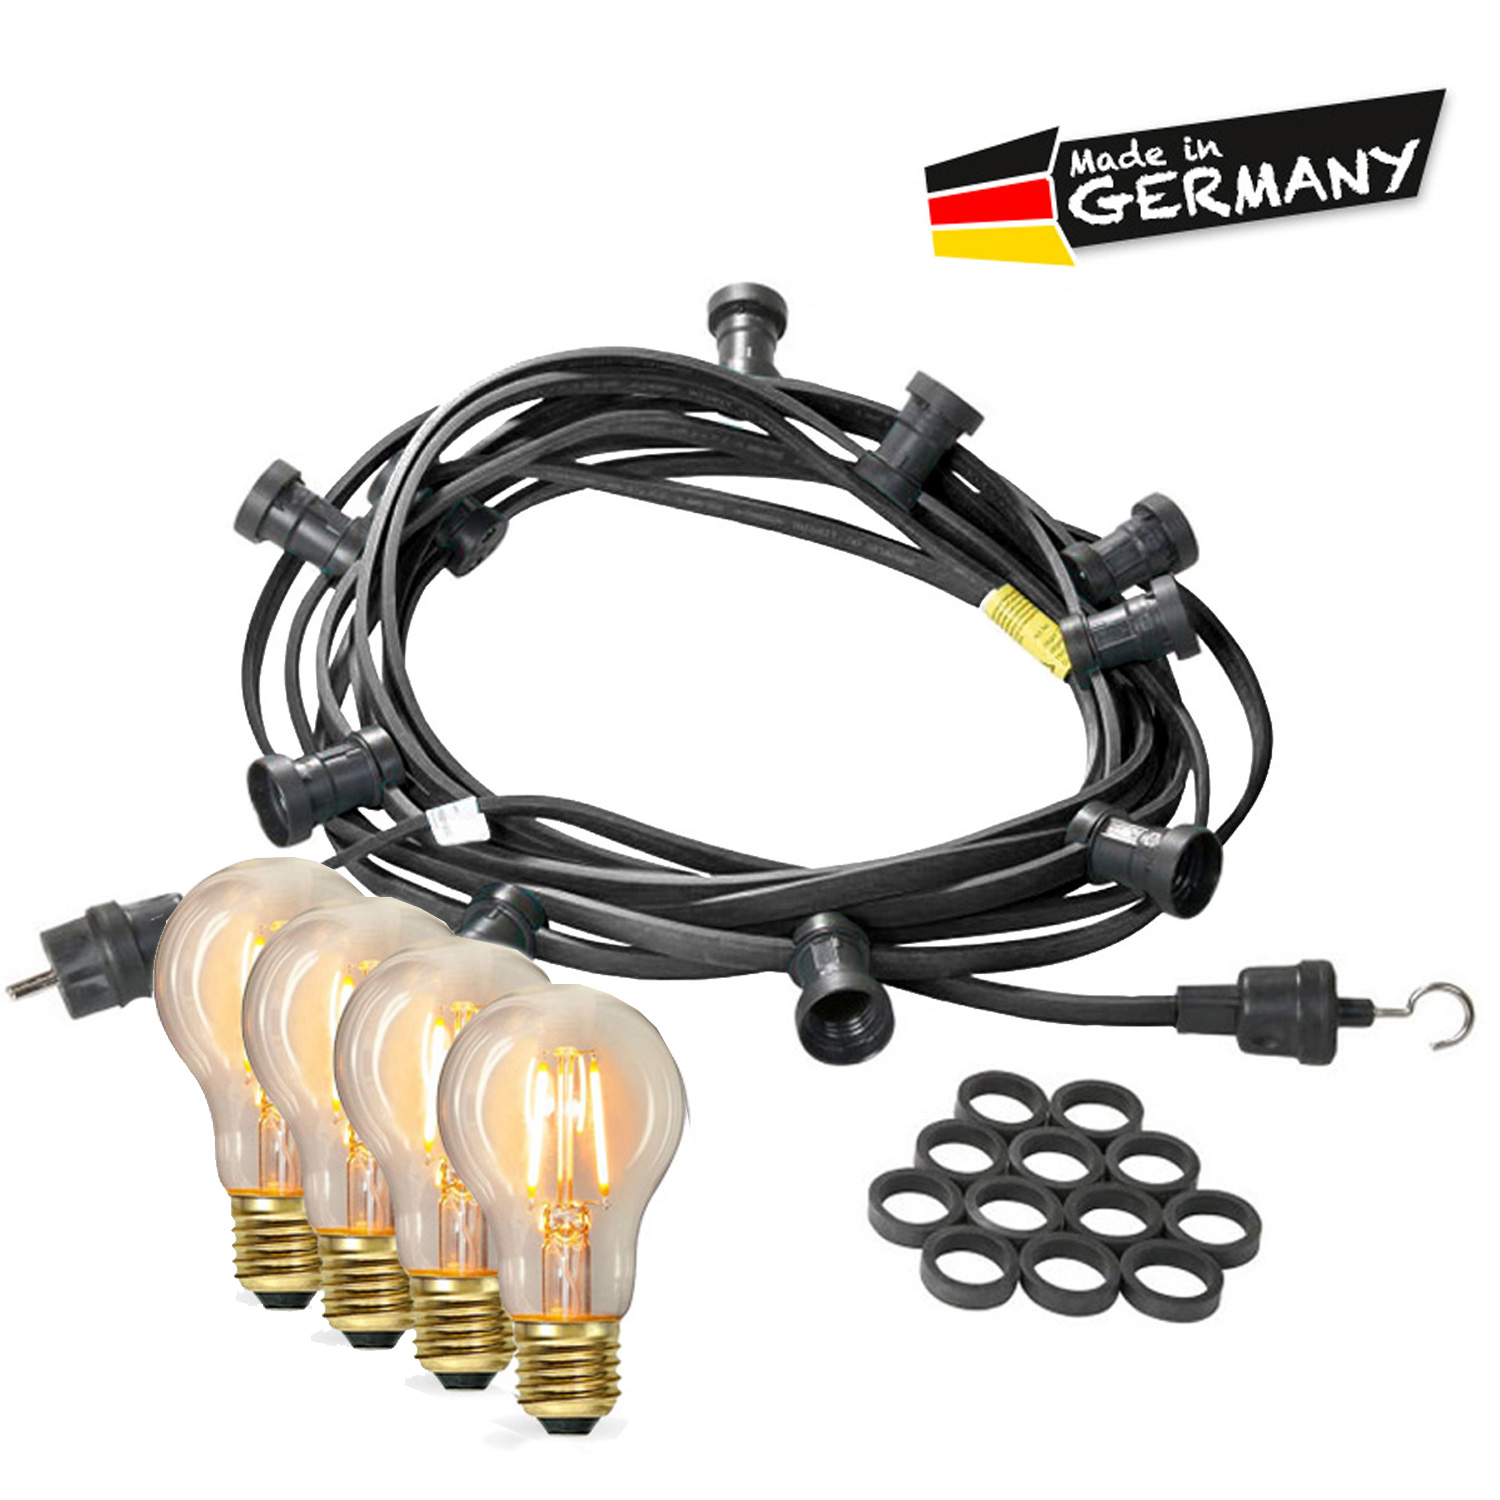 Illu-/Partylichterkette 40m - Außenlichterkette - Made in Germany - 60 x Edison LED Filamentlampen